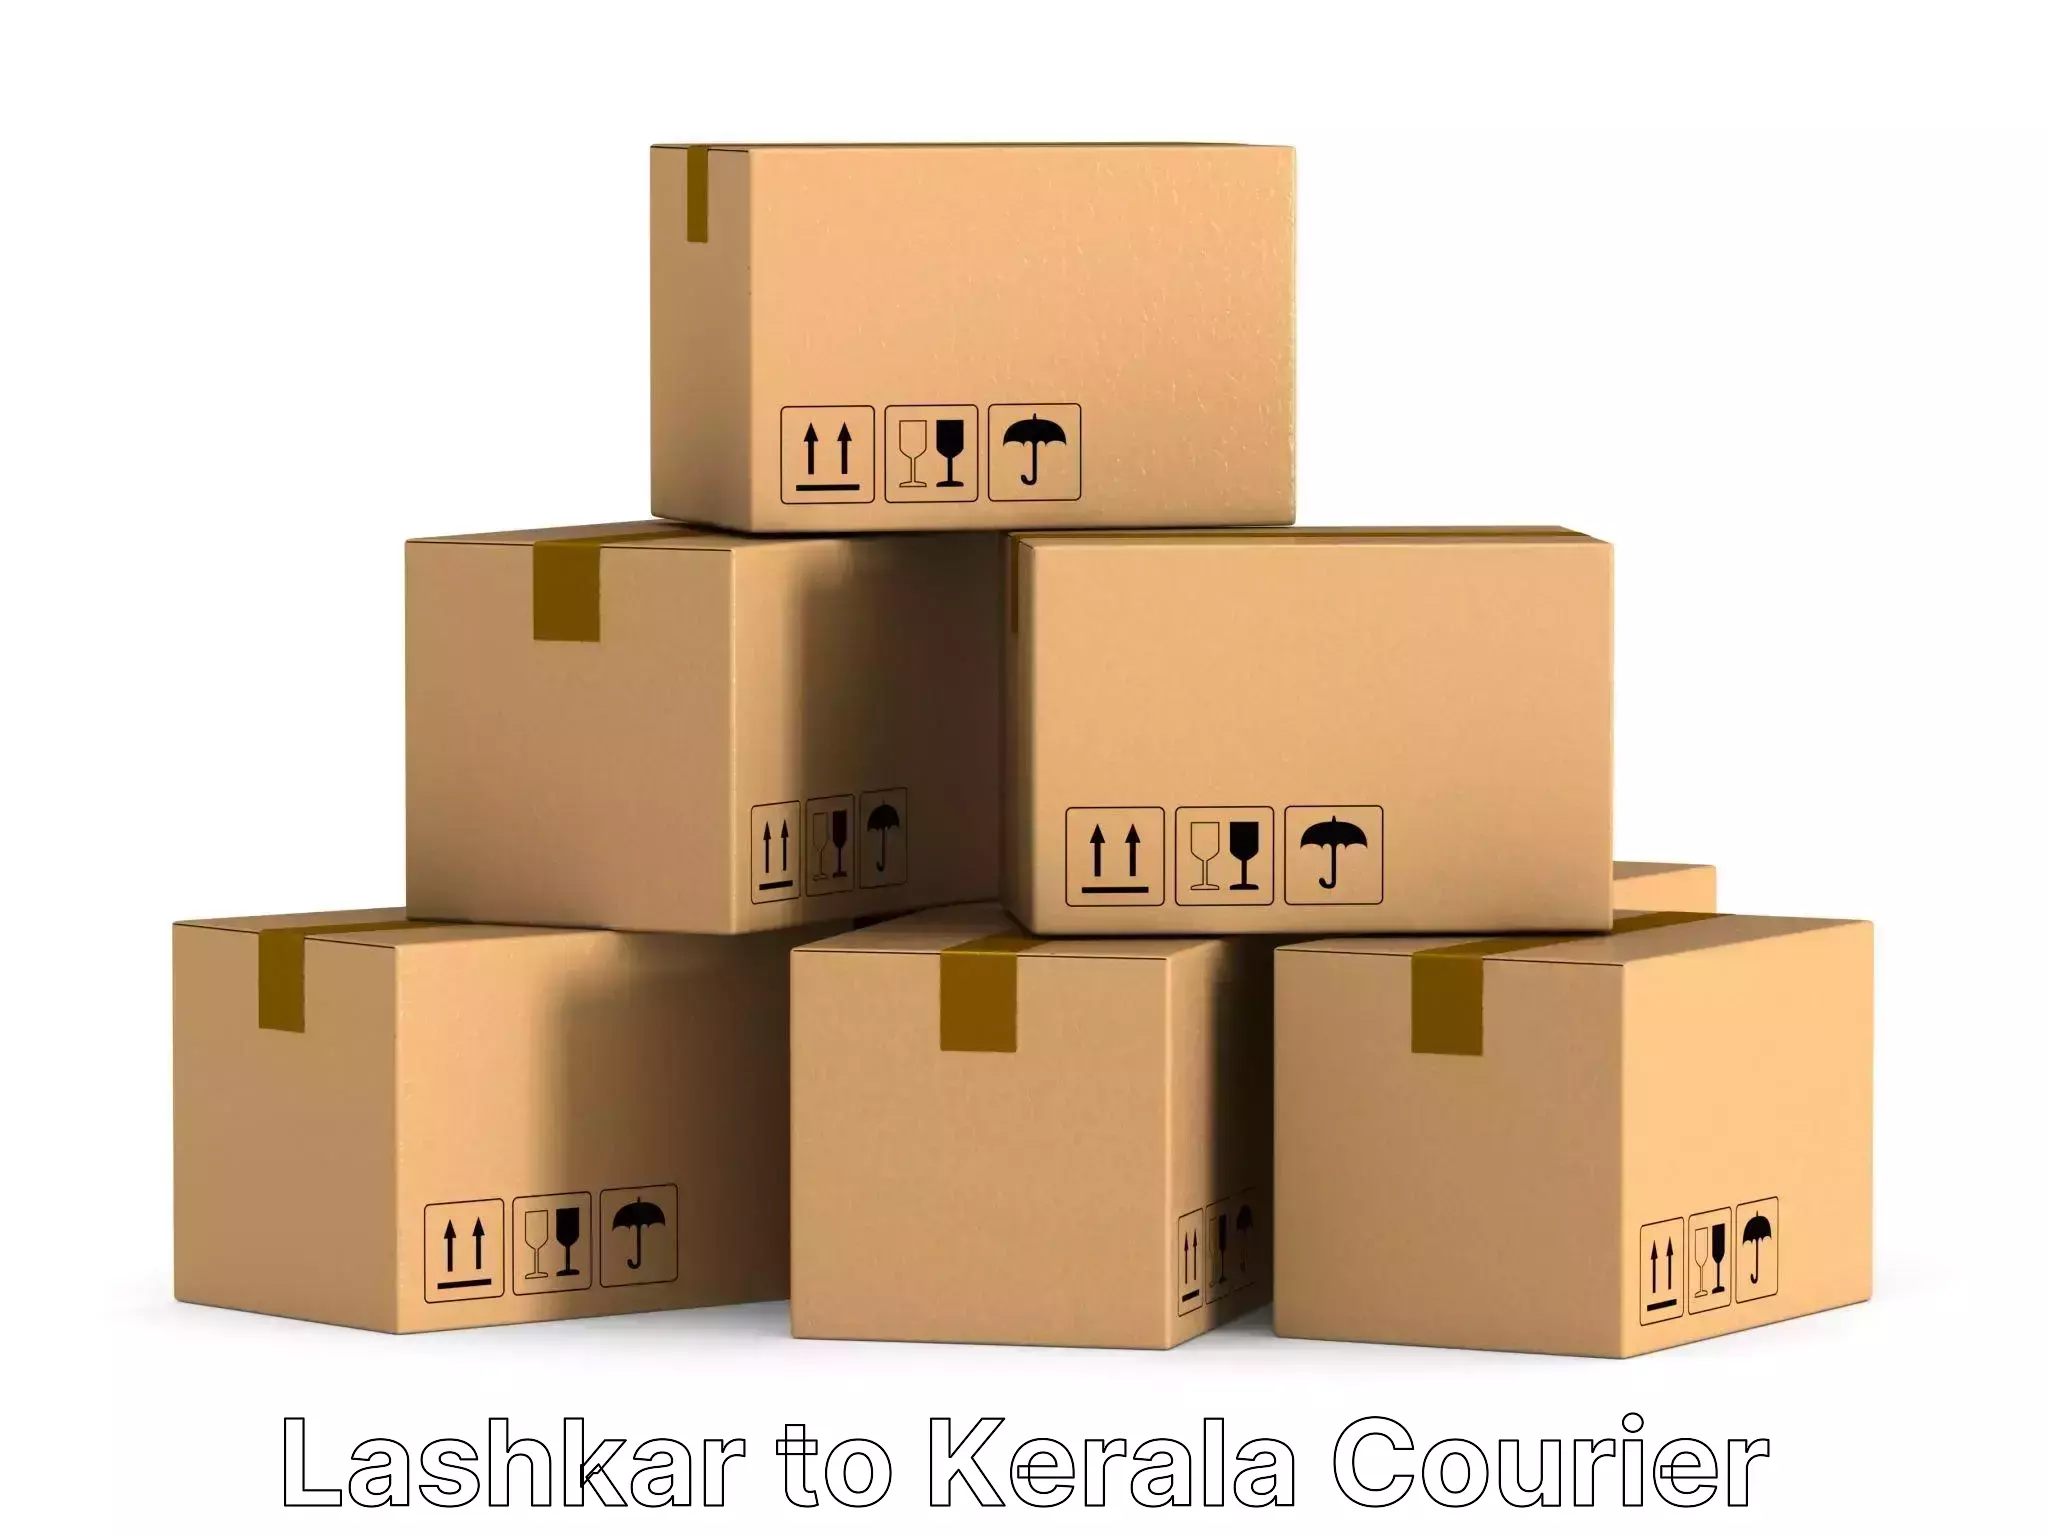 Budget-friendly movers Lashkar to Kerala